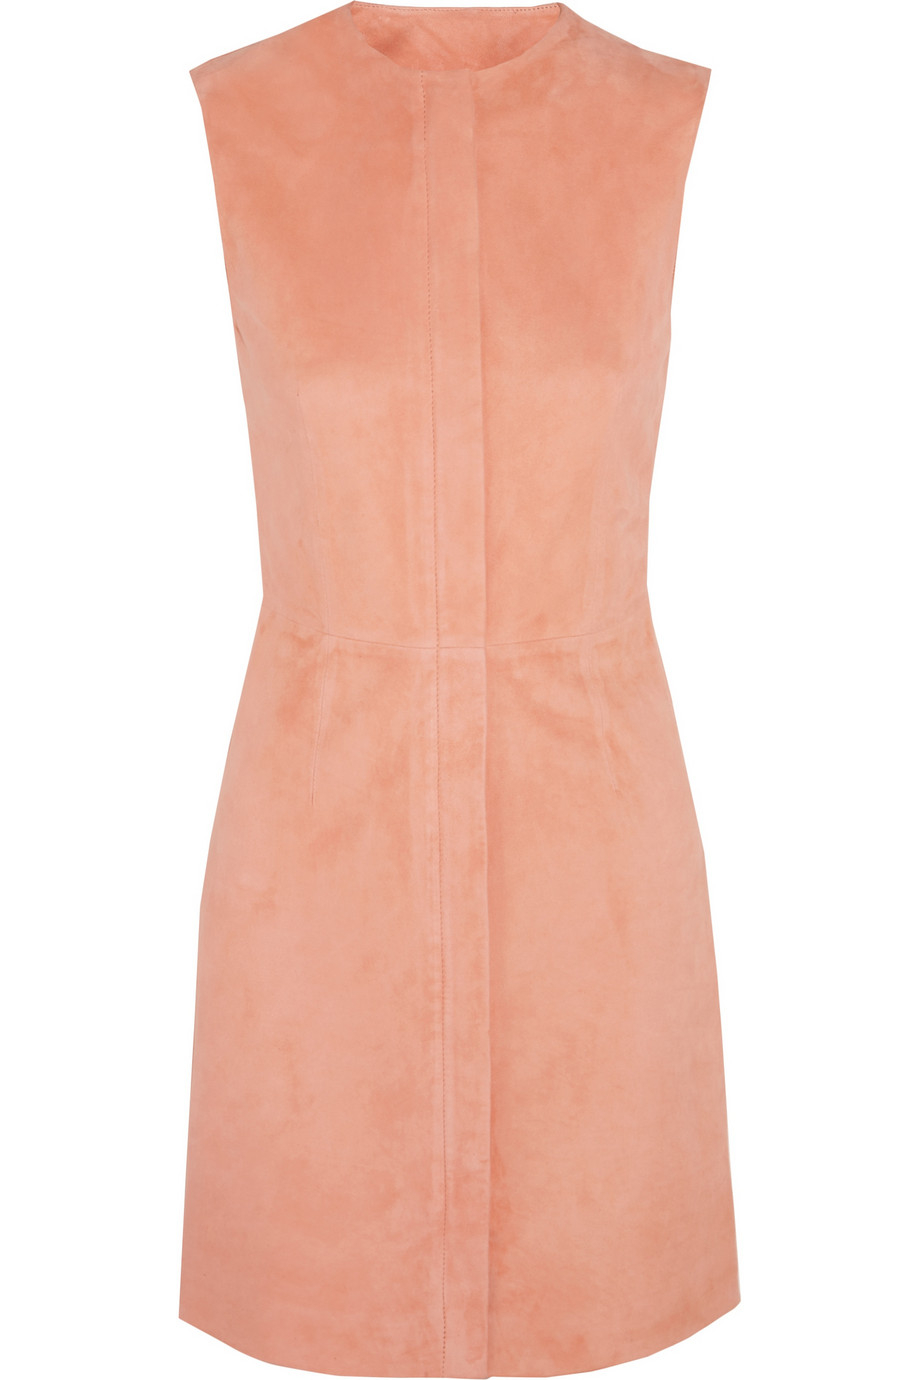 Konserveringsmiddel amerikansk dollar Modregning Balenciaga Silk Suede Dress in Pink (Orange) - Lyst